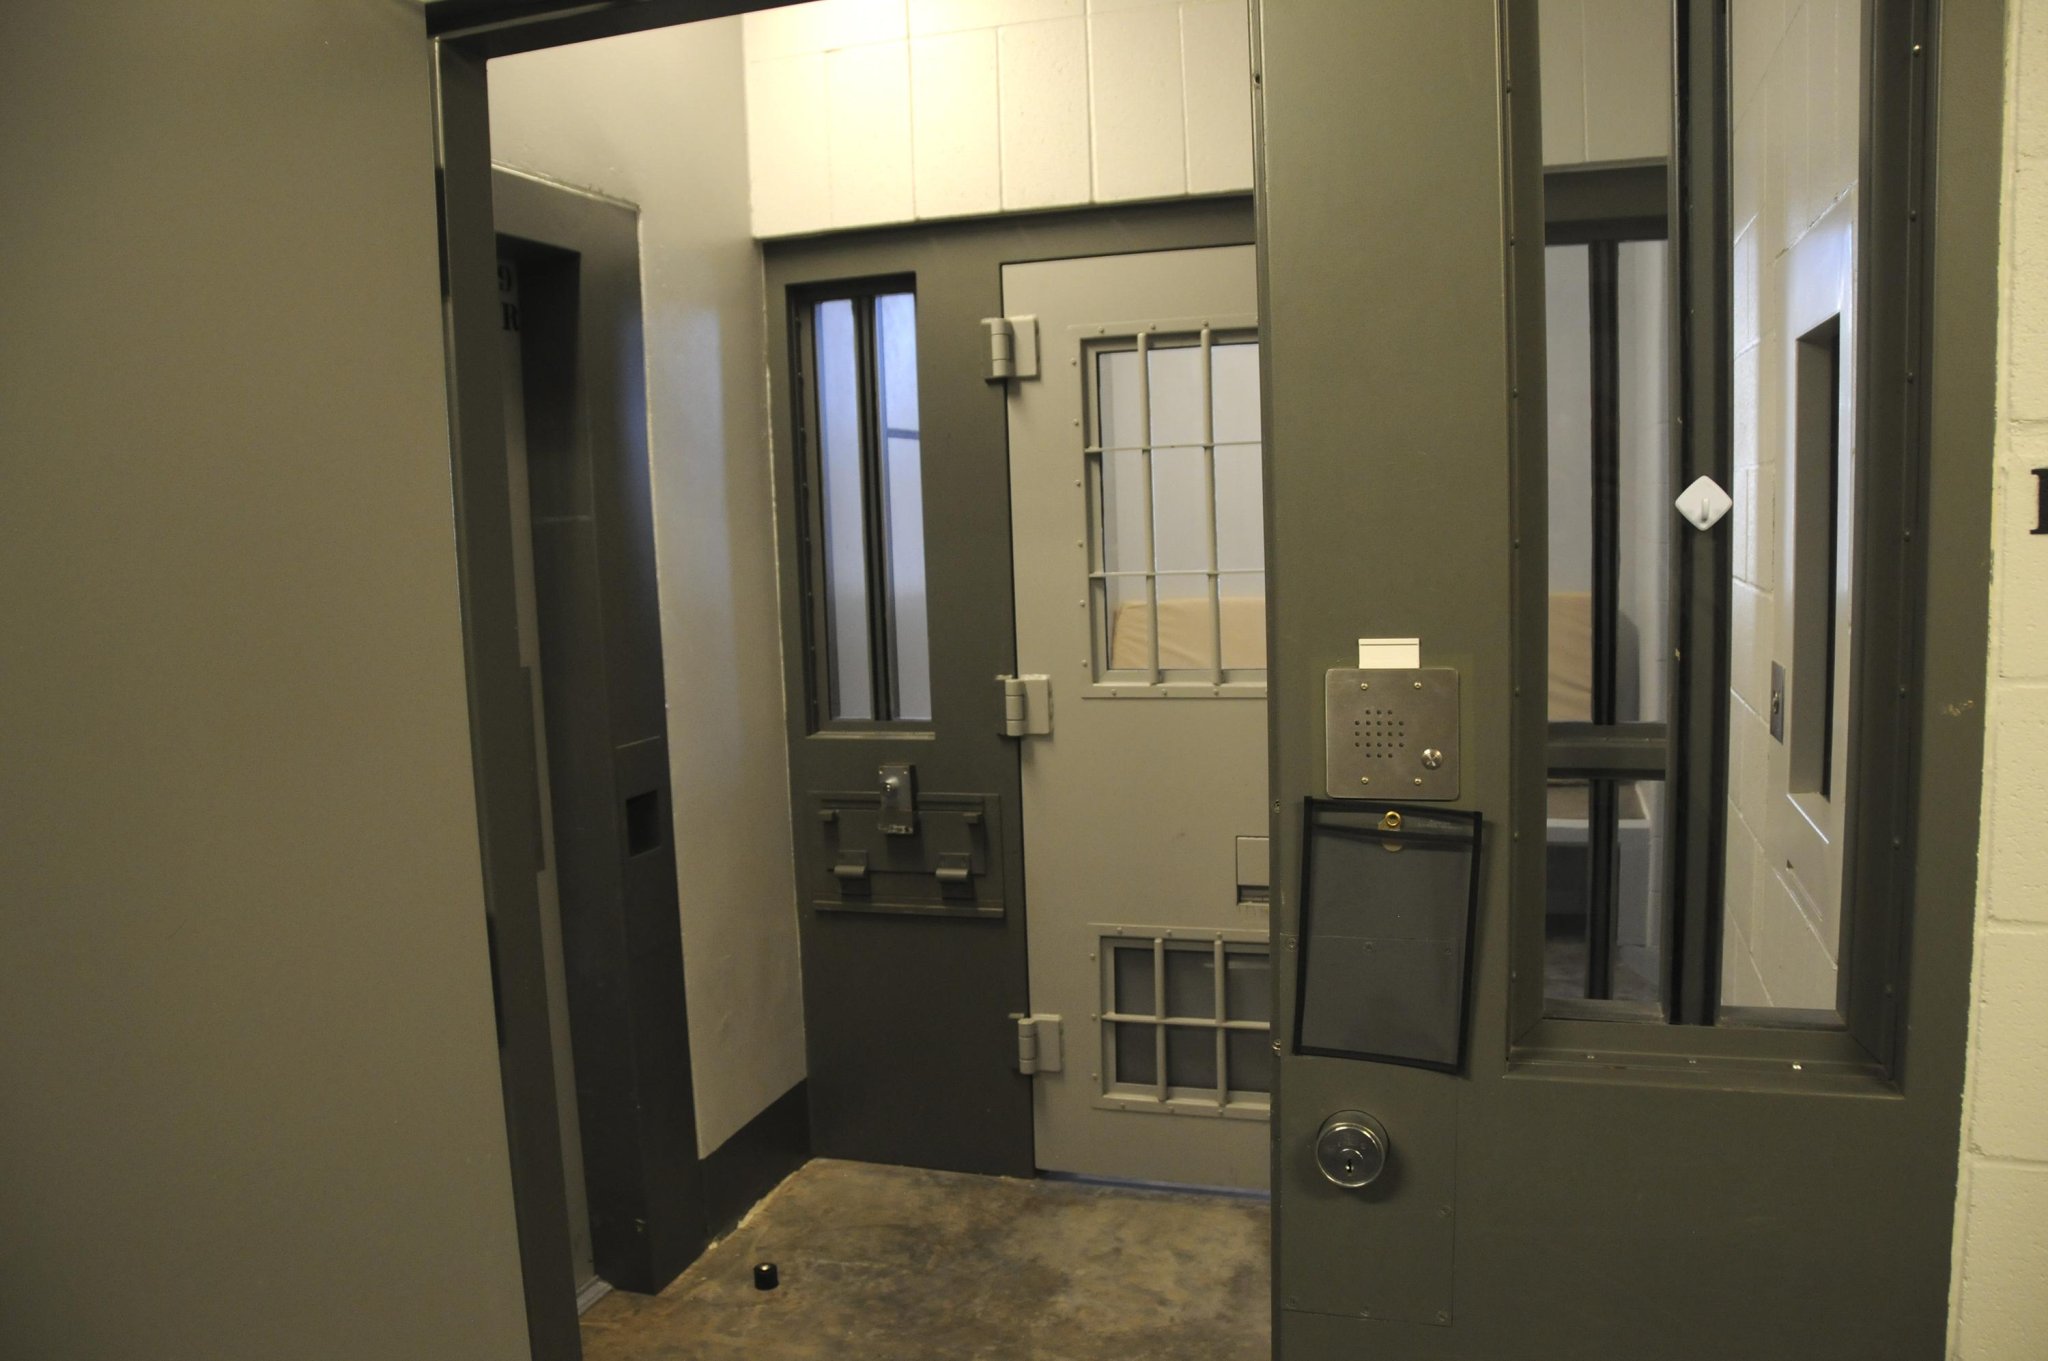 Will Chauvin's prison experience remain unusual?